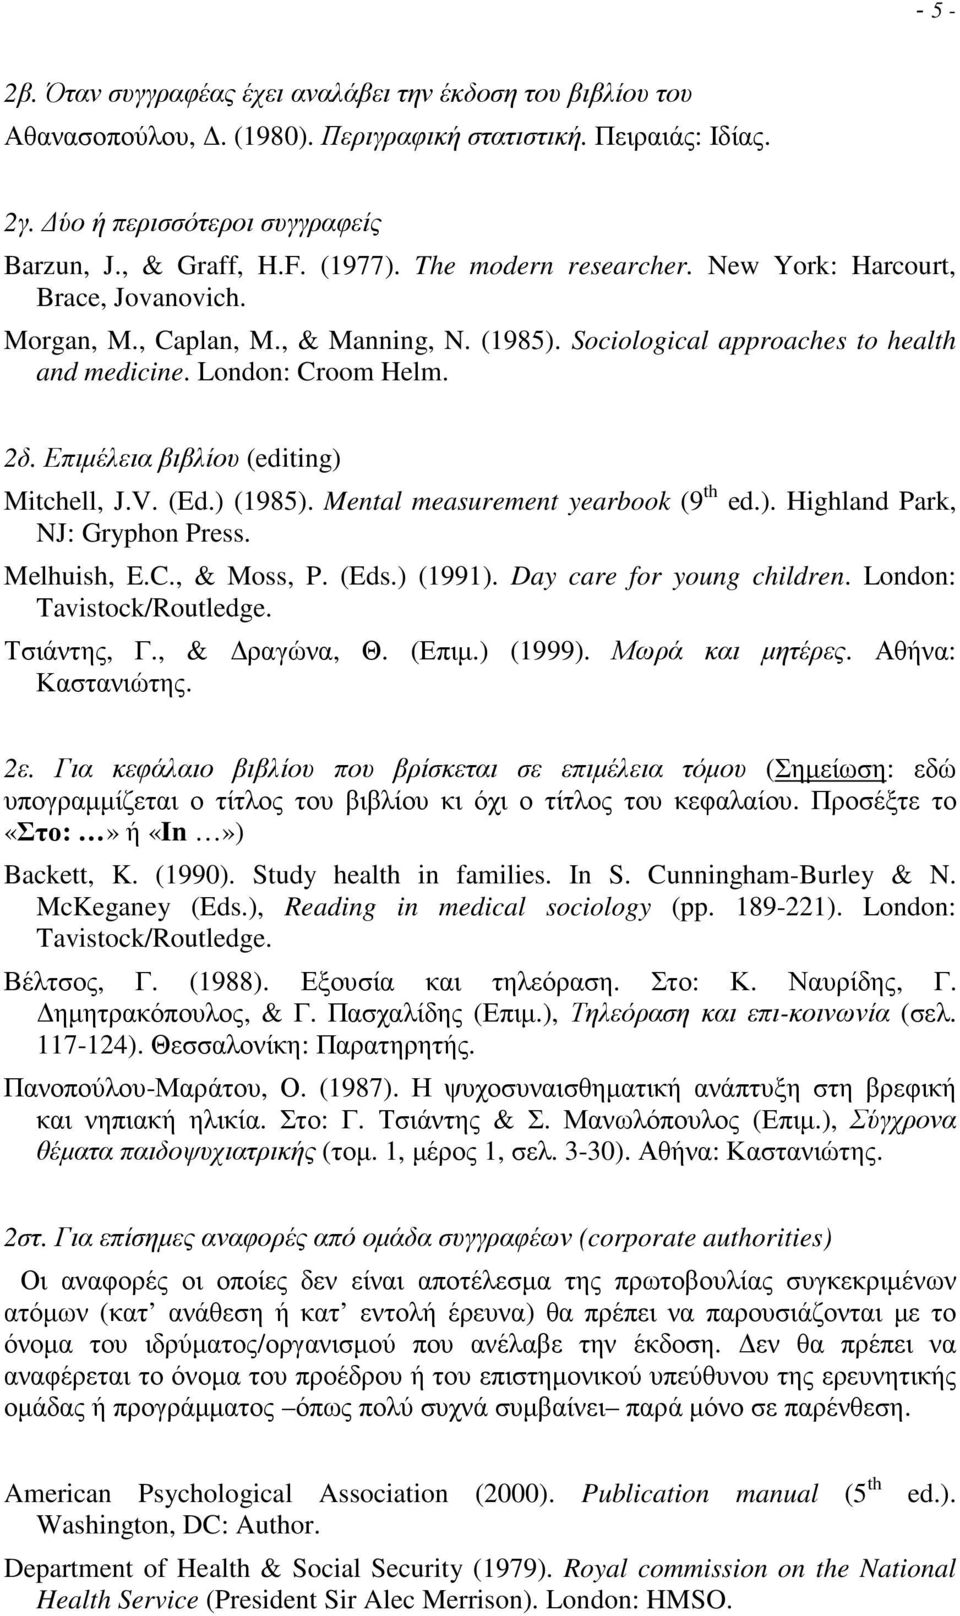 Επιµέλεια βιβλίου (editing) Mitchell, J.V. (Ed.) (1985). Mental measurement yearbook (9 th ed.). Highland Park, NJ: Gryphon Press. Melhuish, E.C., & Moss, P. (Eds.) (1991).